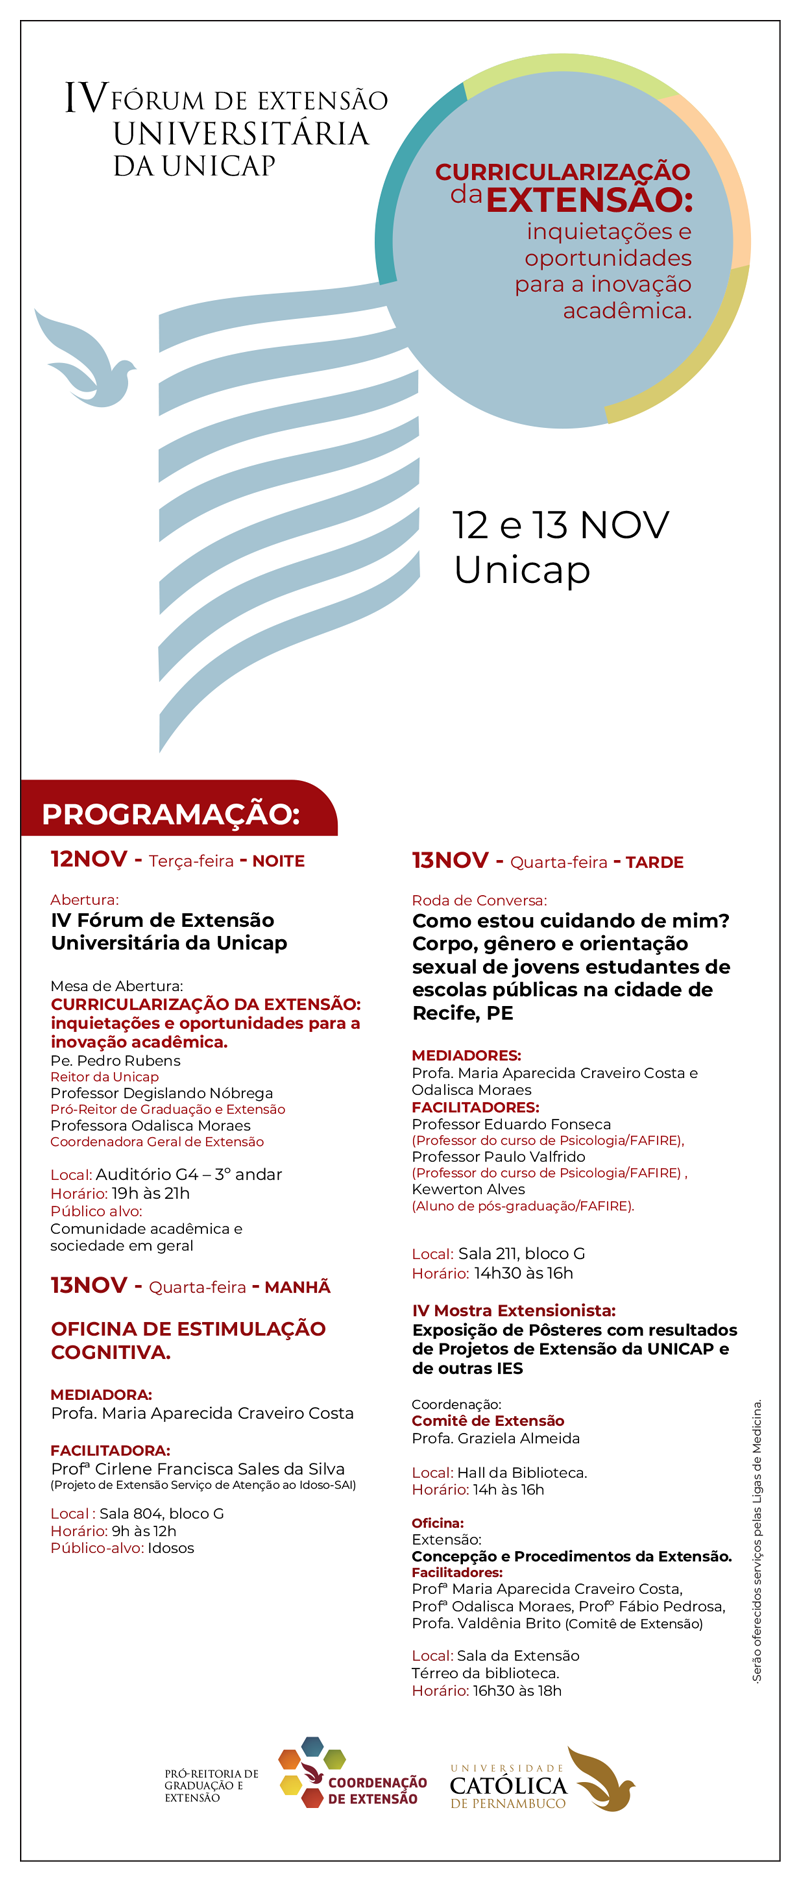 IV Fórum de Extensão Universitária da Unicap